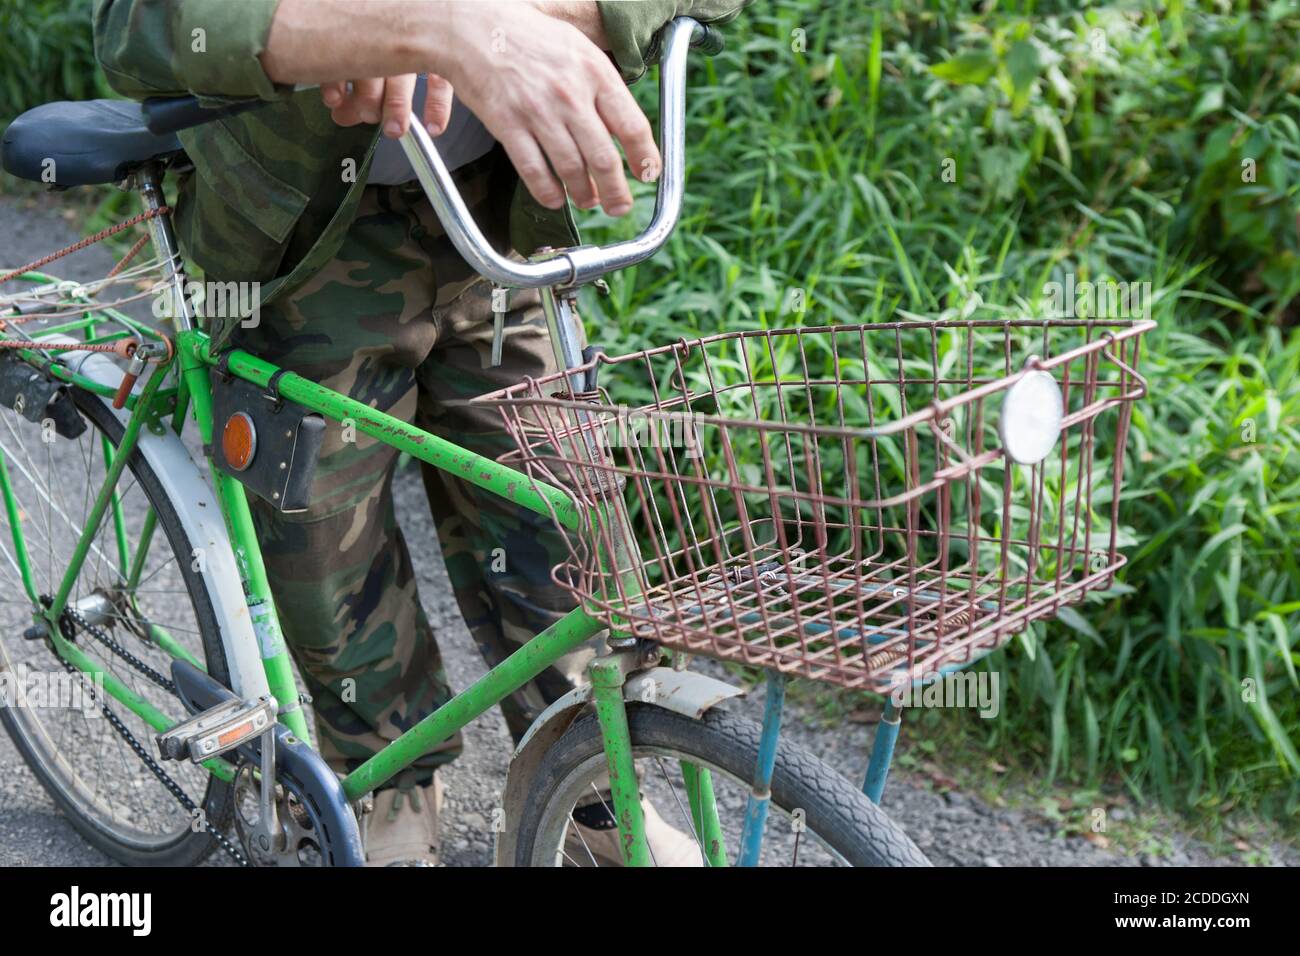 Un cycliste debout près d'un vieux vélo avec un rack en métal, tir en plein air Banque D'Images